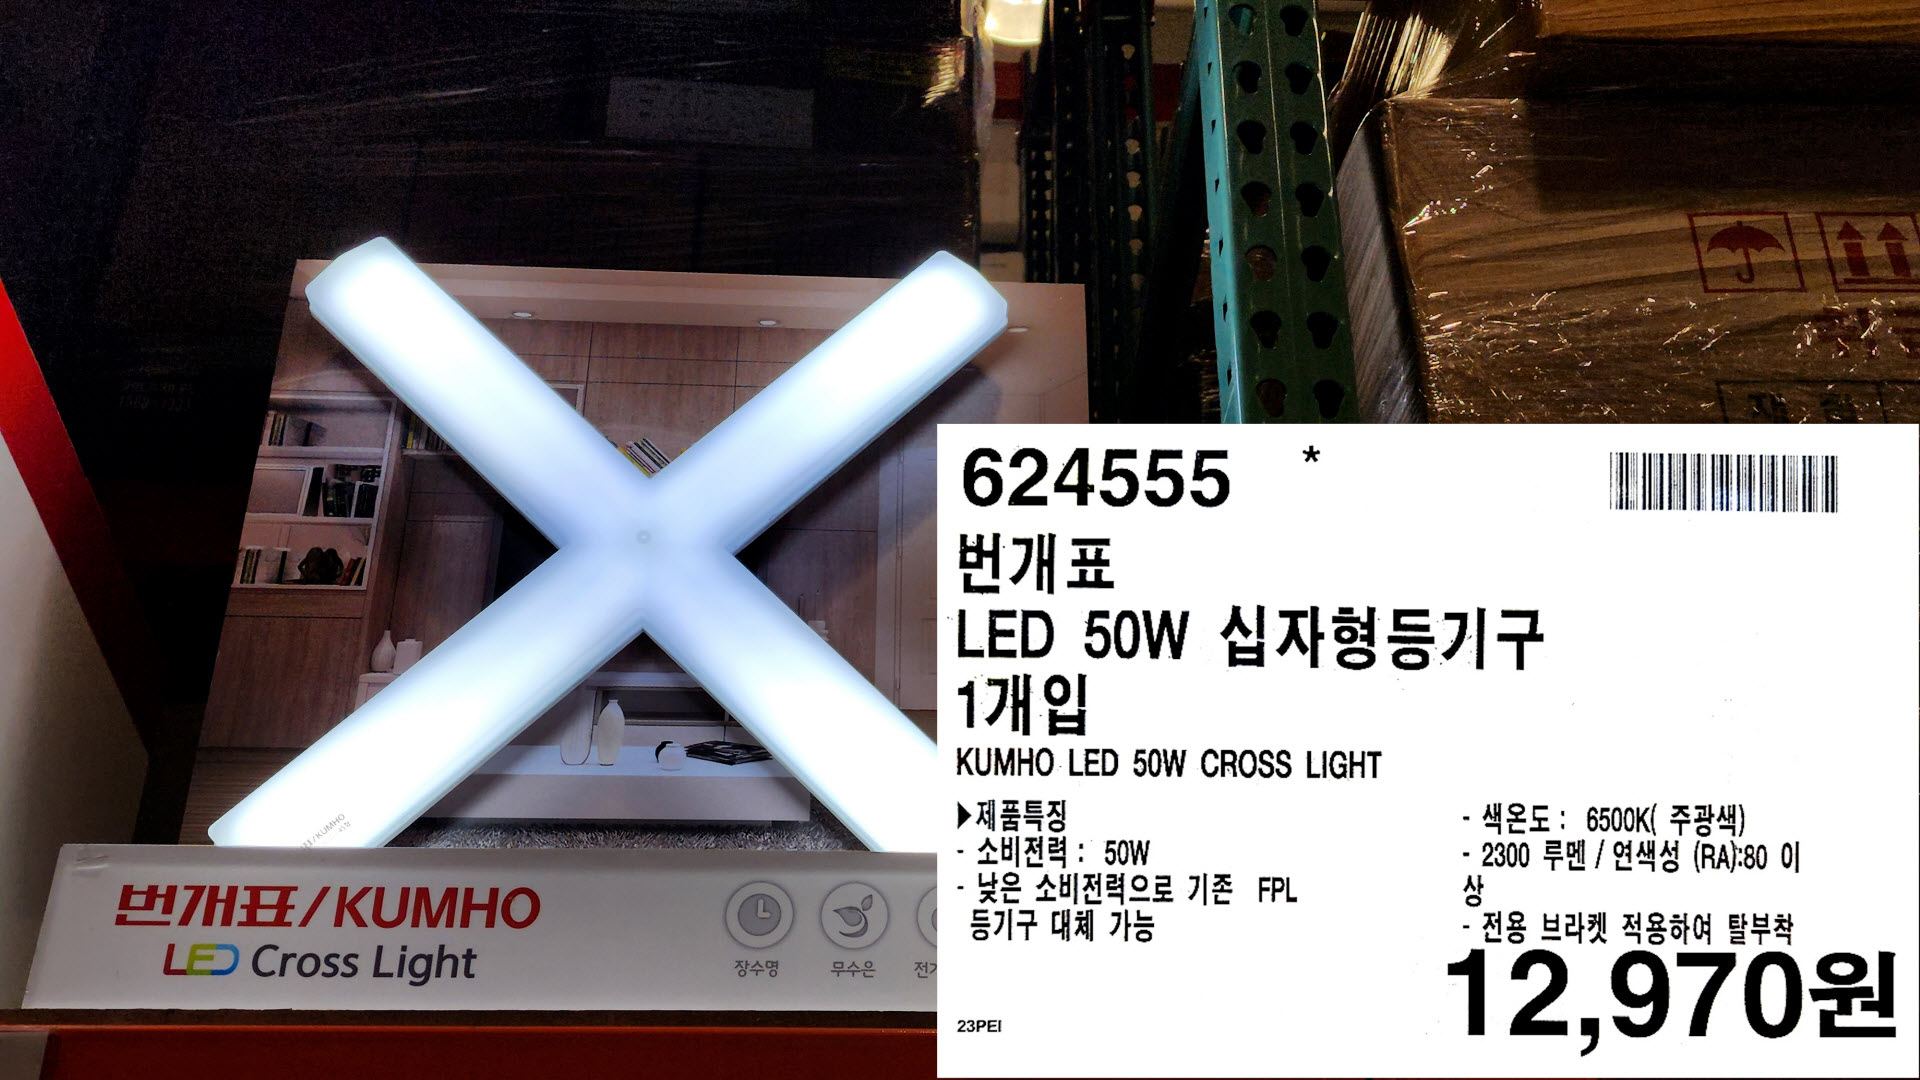 번개표
LED 50W 십자형등기구
1개입
KUMHO LED 50W CROSS LIGHT
▶ 제품특징
•소비전력: 50W
-낮은 소비전력으로 기존 FPL
등기구 대체 가능
- 색온도: 6500K(주광색)
2300 루멘/ 연색성 (RA):80 이
전용 브라켓 적용하여 탈부착
12&#44;970원